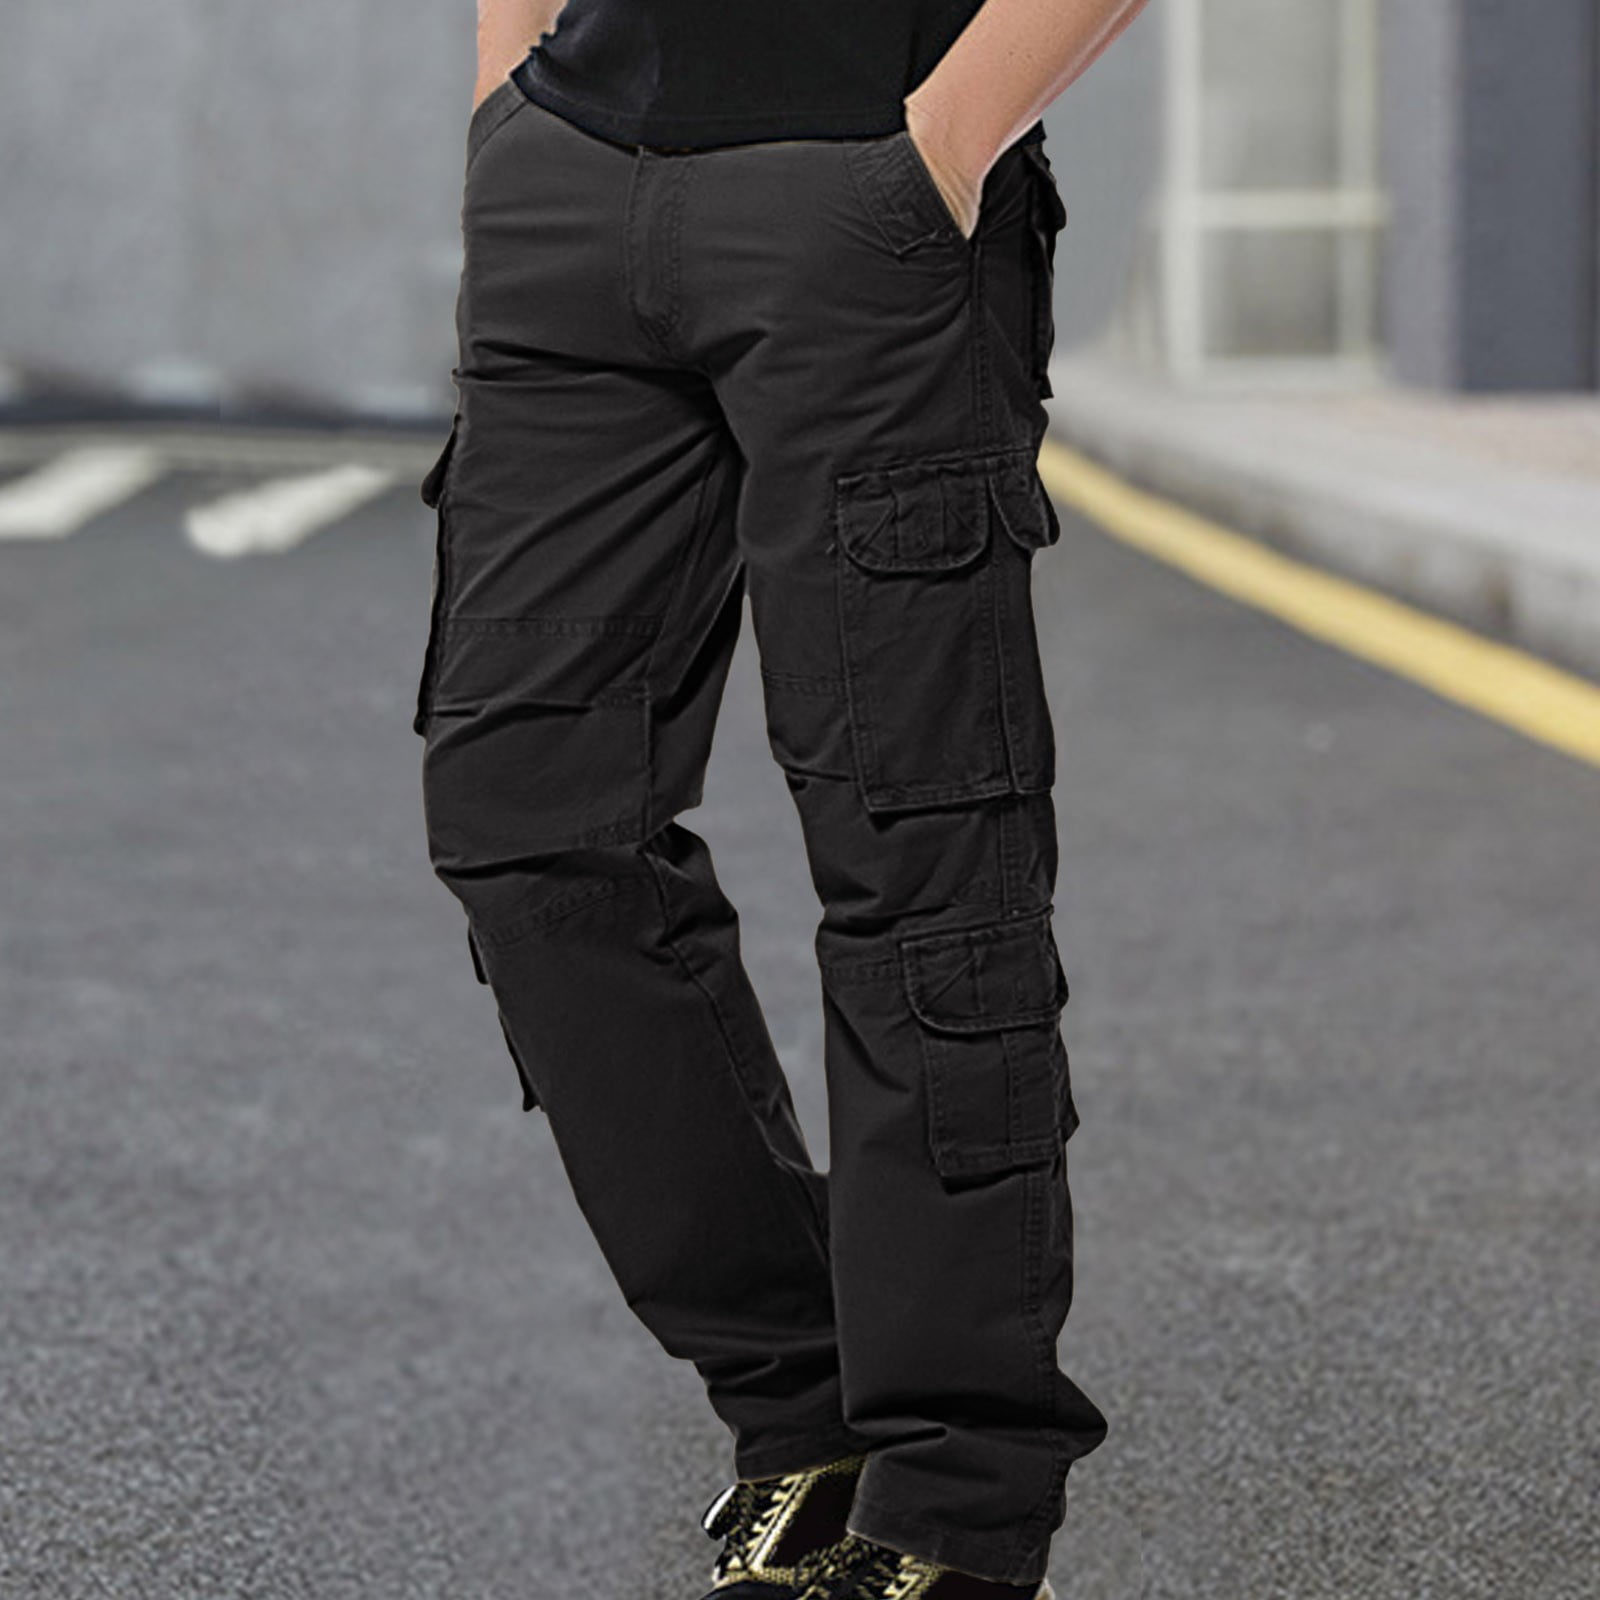 Get Stylish Black Cargo Track Pants For Men Online at Jeffa – JEFFA-baongoctrading.com.vn